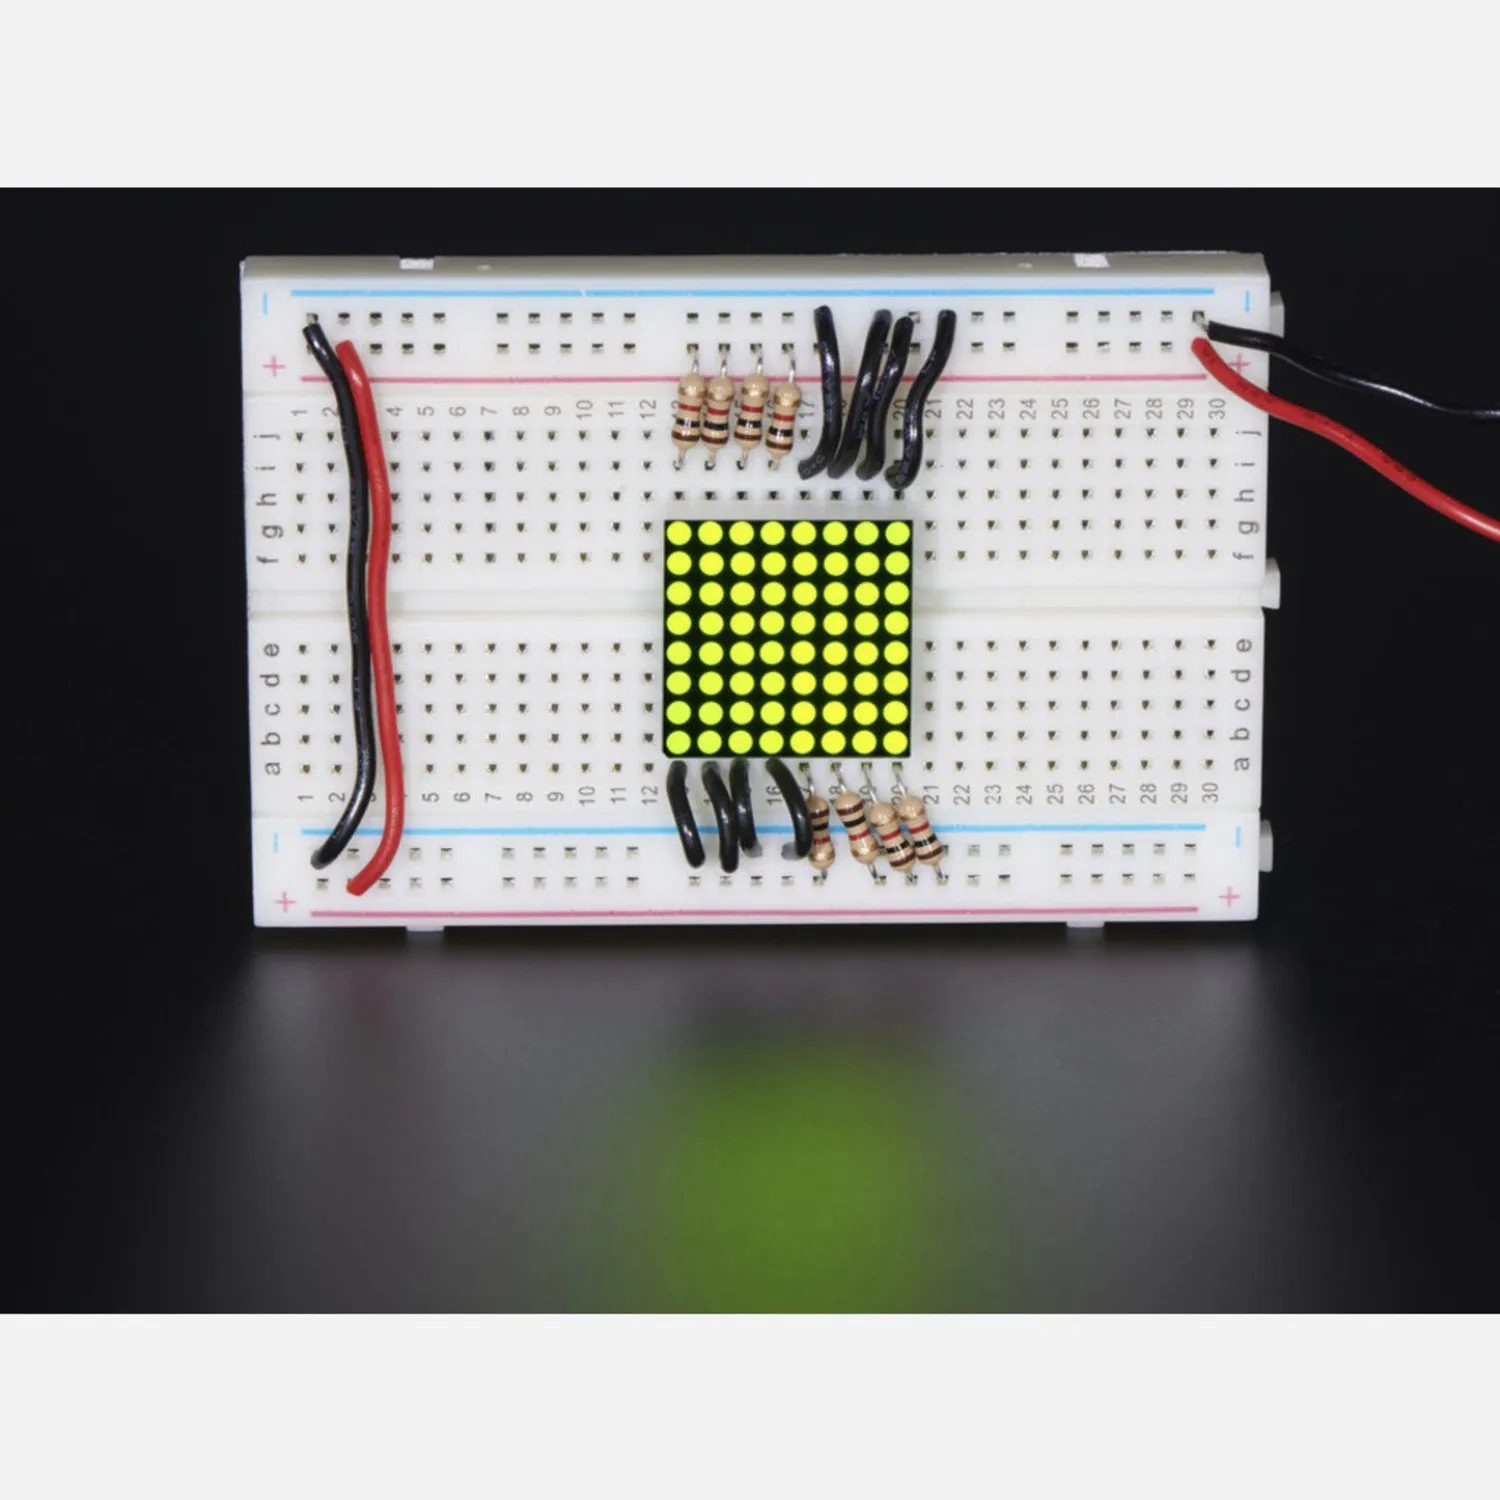 Photo of Miniature 8x8 Yellow-Green LED Matrix